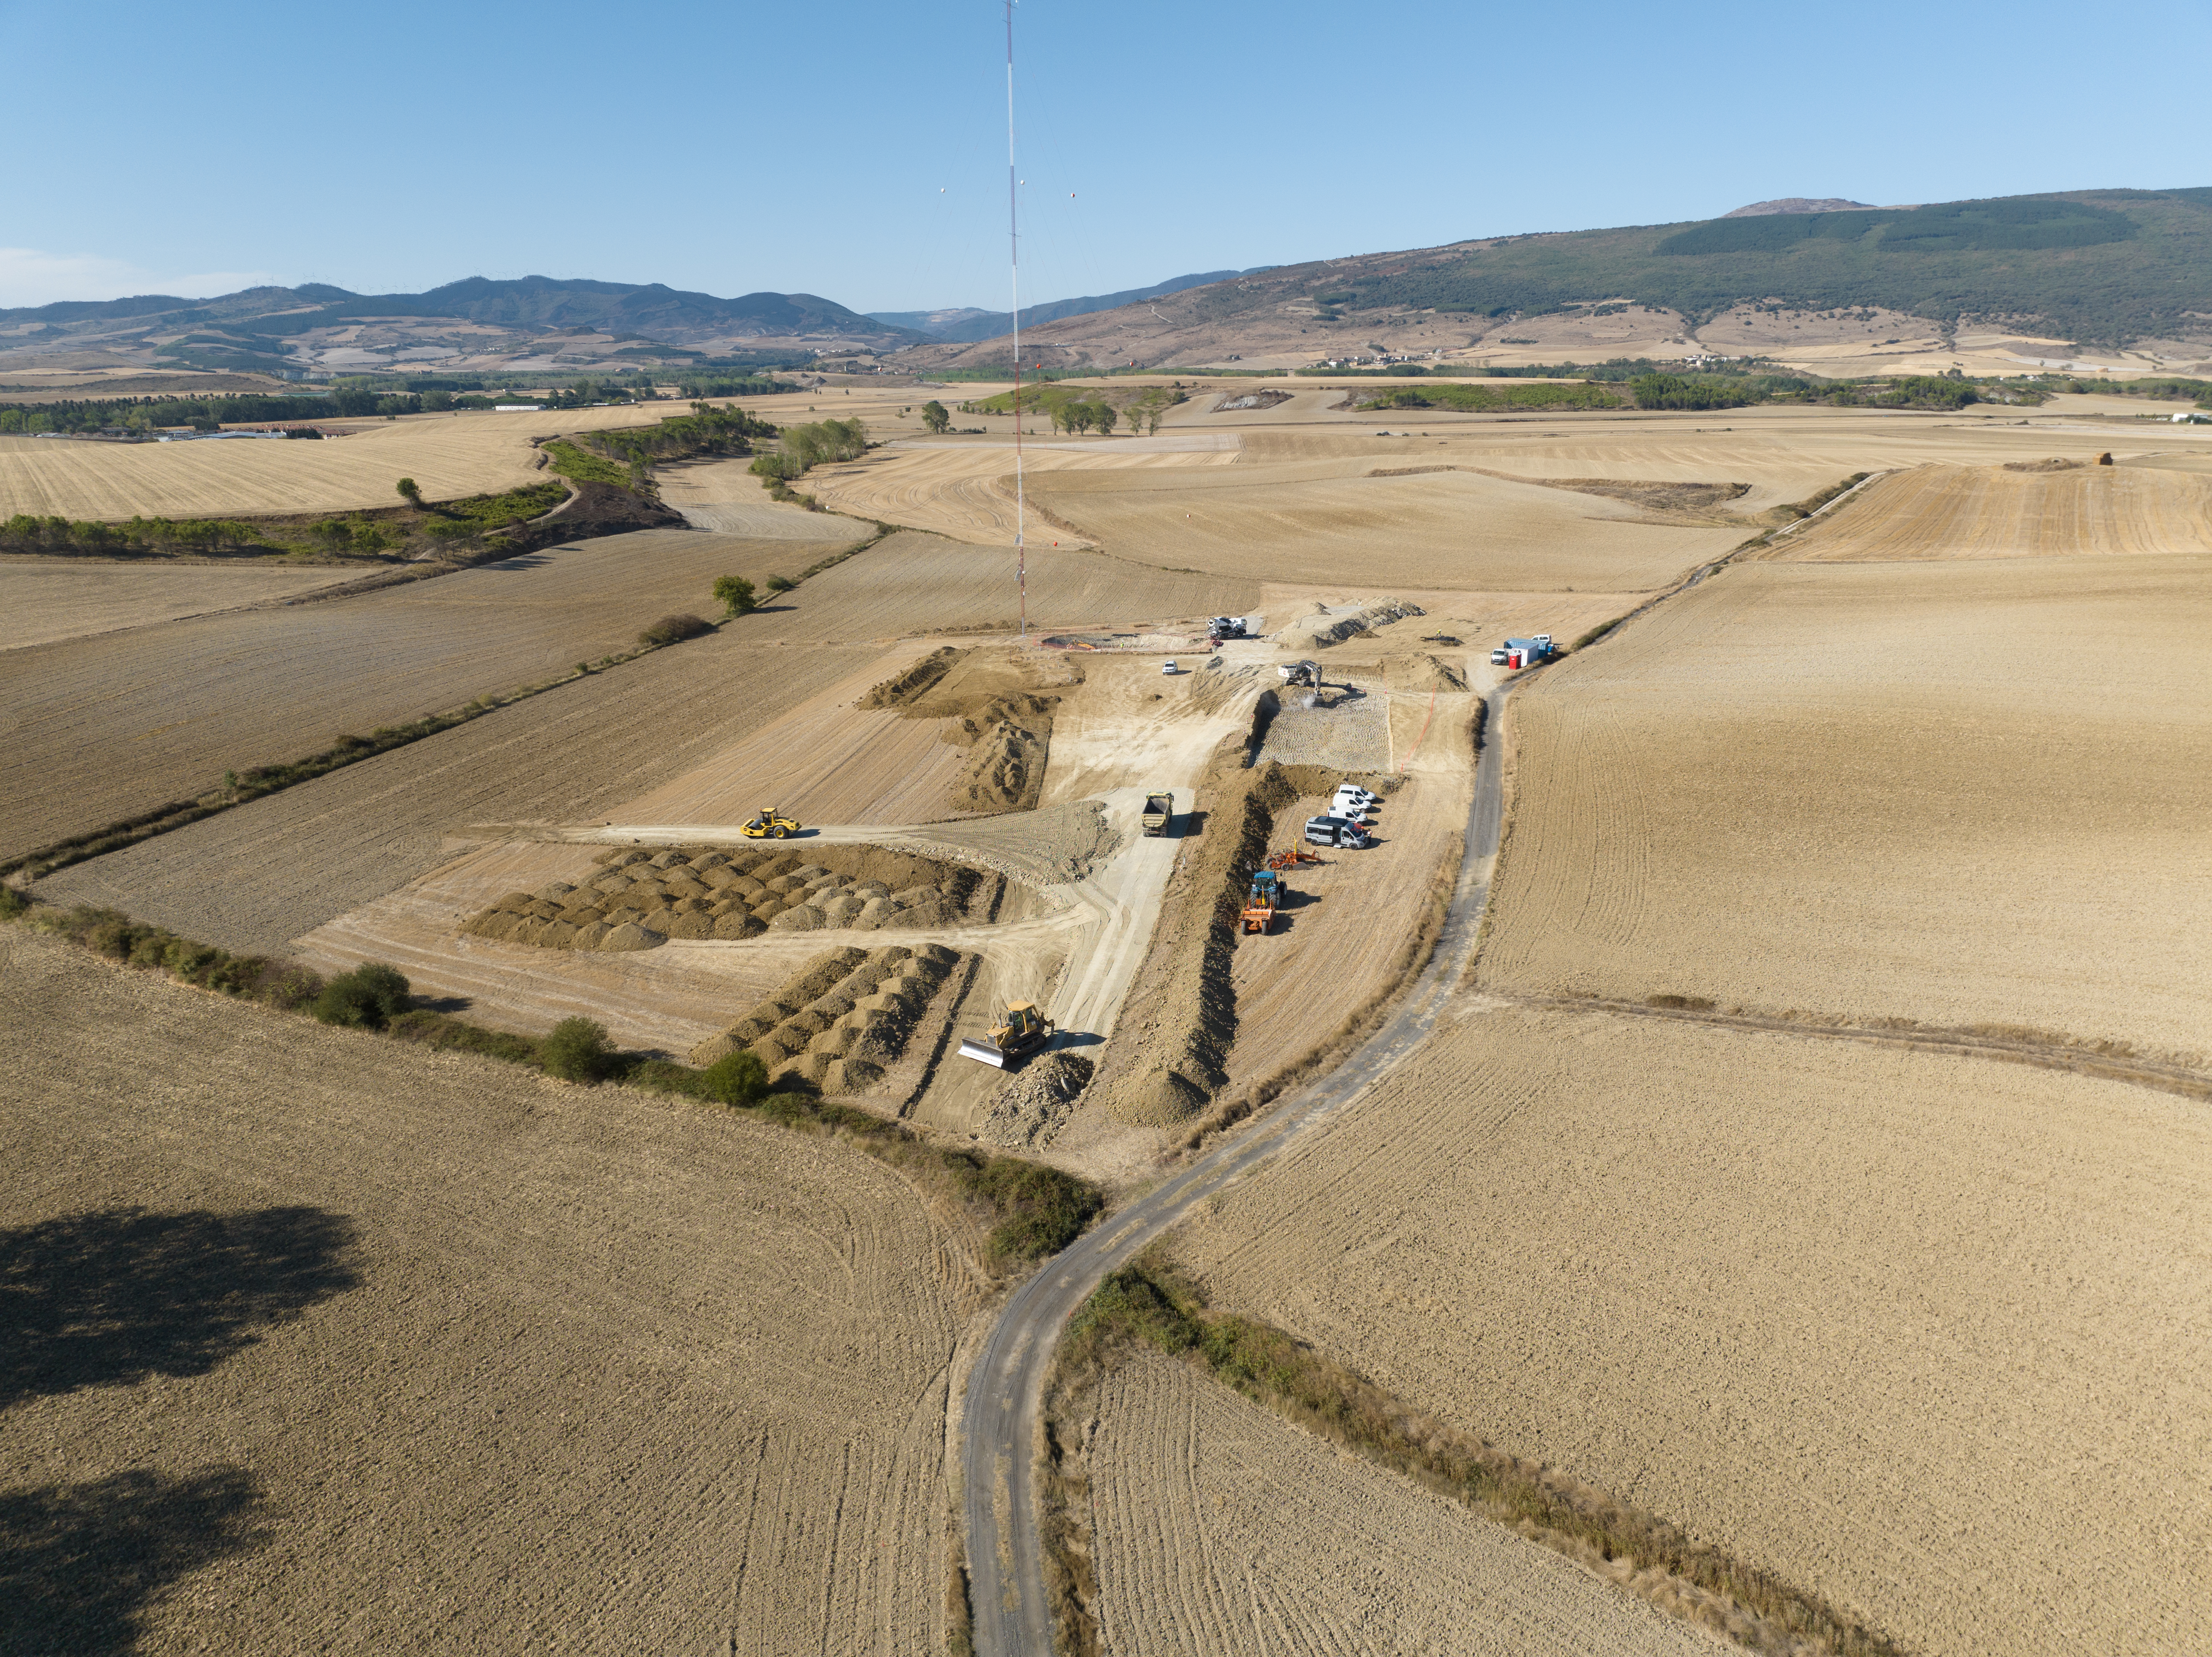 Für mehr Nachhaltigkeit: RWE testet innovative Technologien an neuem Windpark in Spanien  